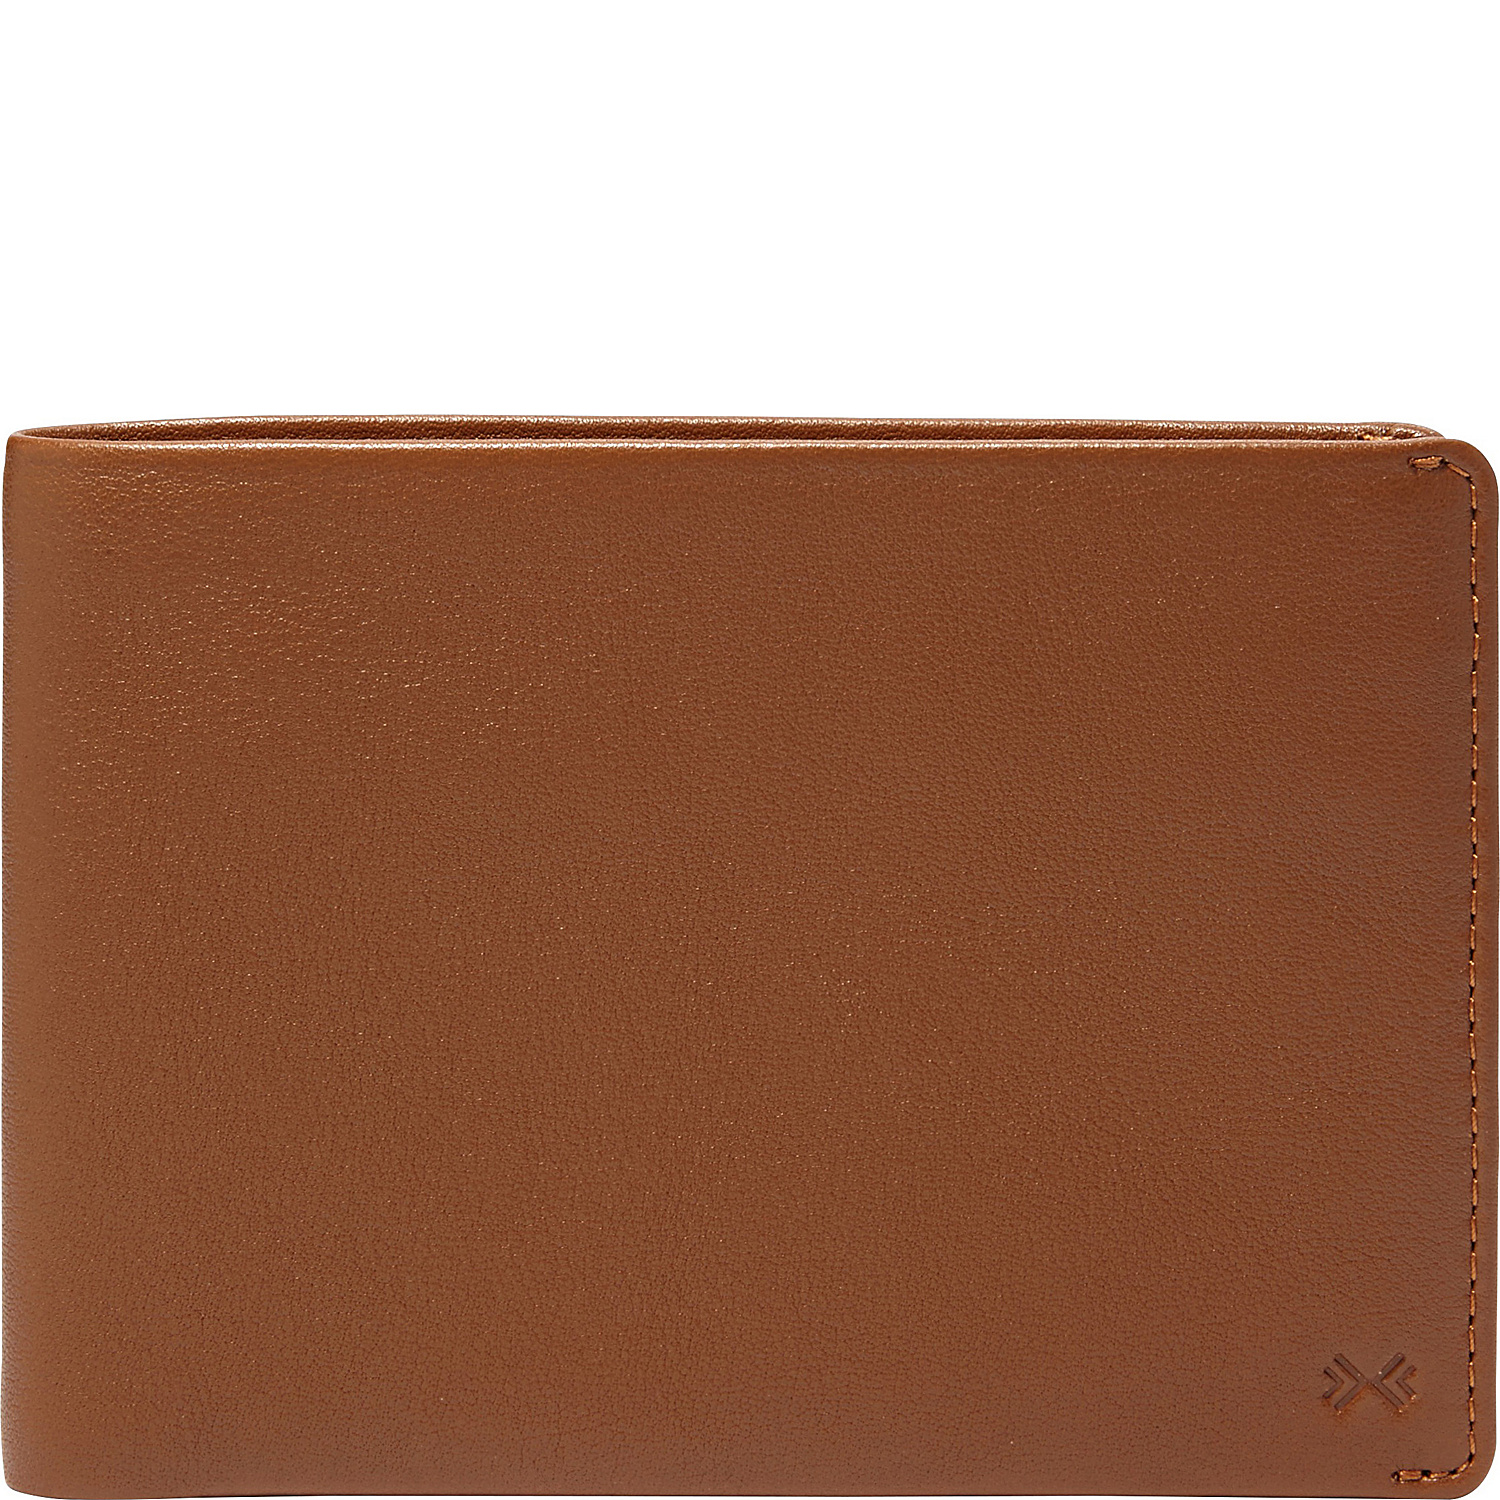 Joakim Leather Passport Wallet